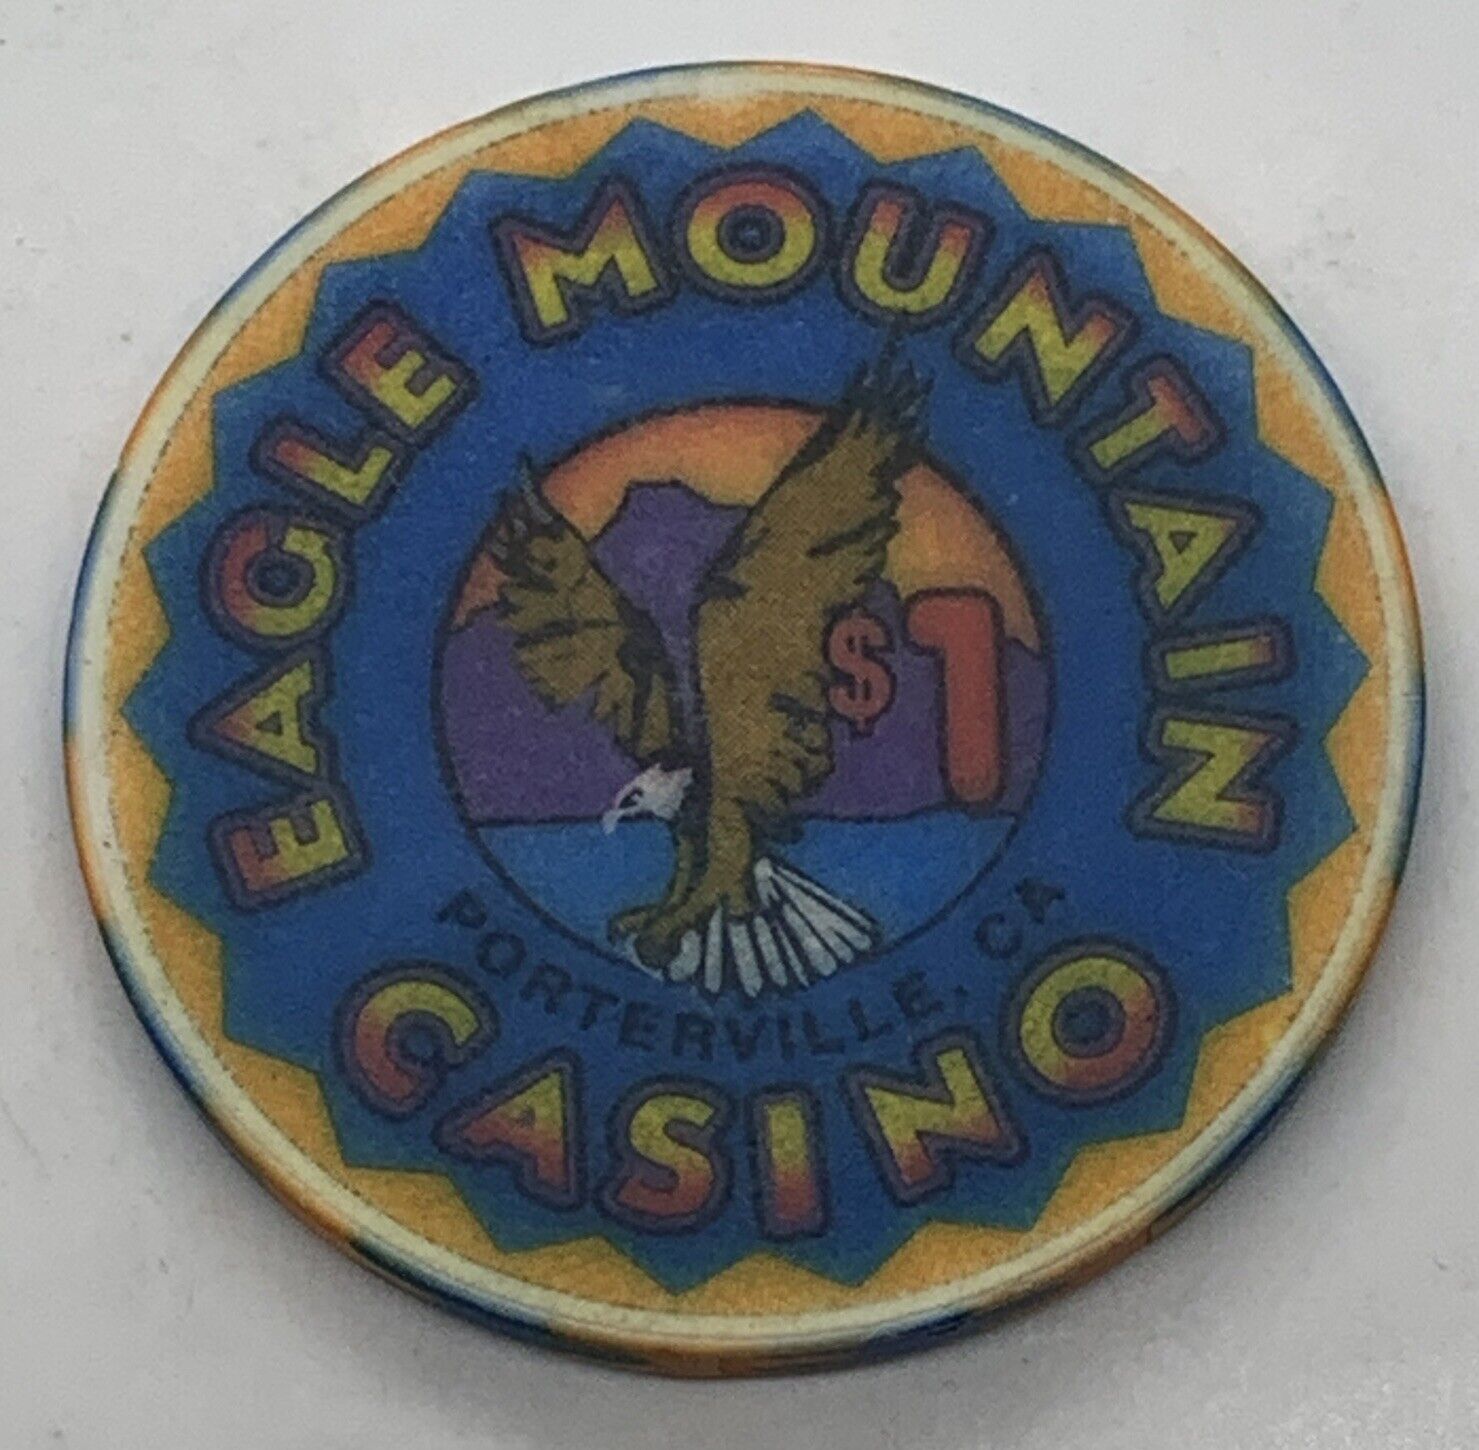 Eagle Mountain Casino $1 Chip Porterville California Ceramic 1990